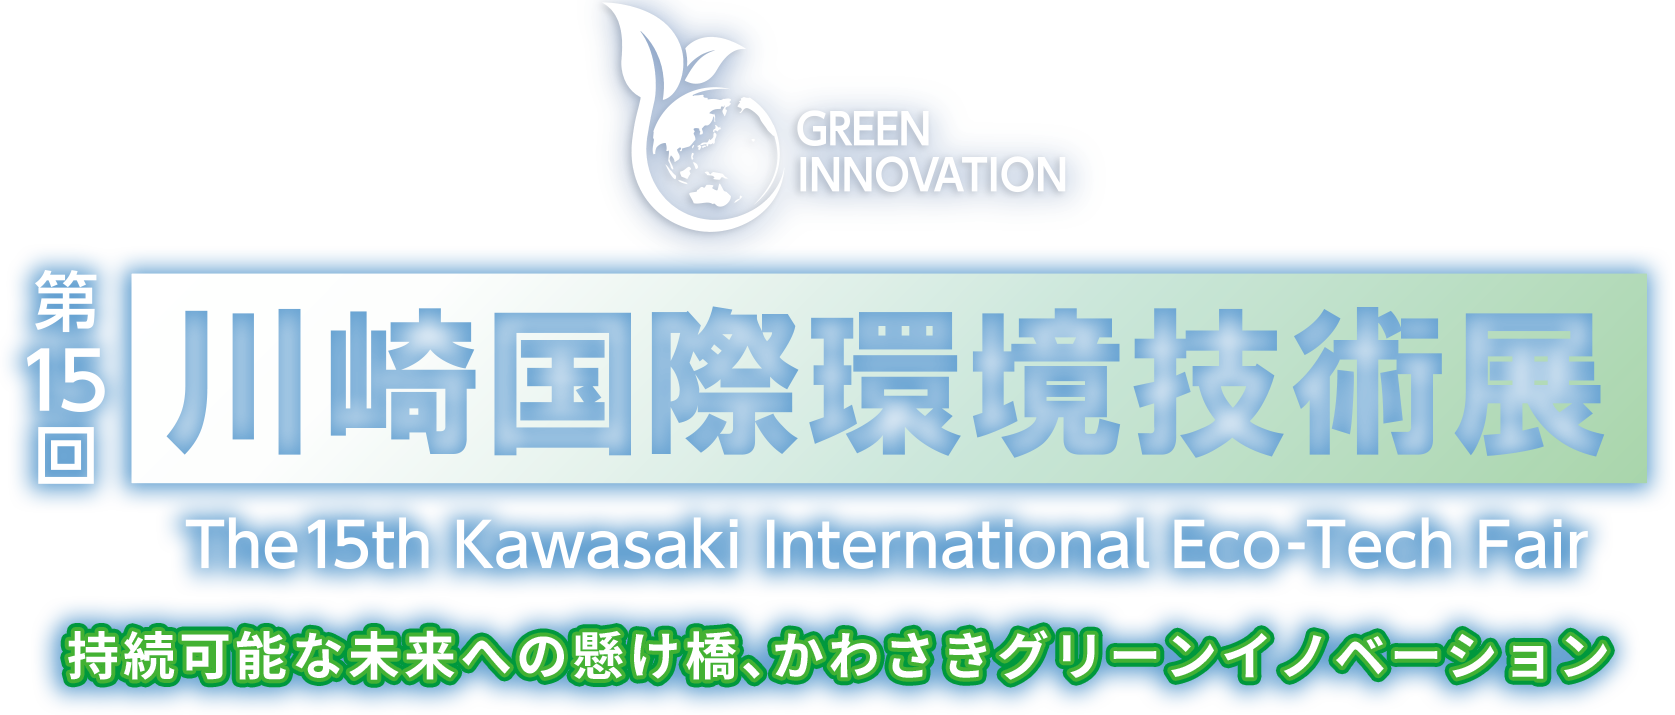 第15回川崎国際環境技術展 The 15th Kawasaki International Eco-Tech Fair 持続可能な未来への懸け橋、かわさきグリーンイノベーション